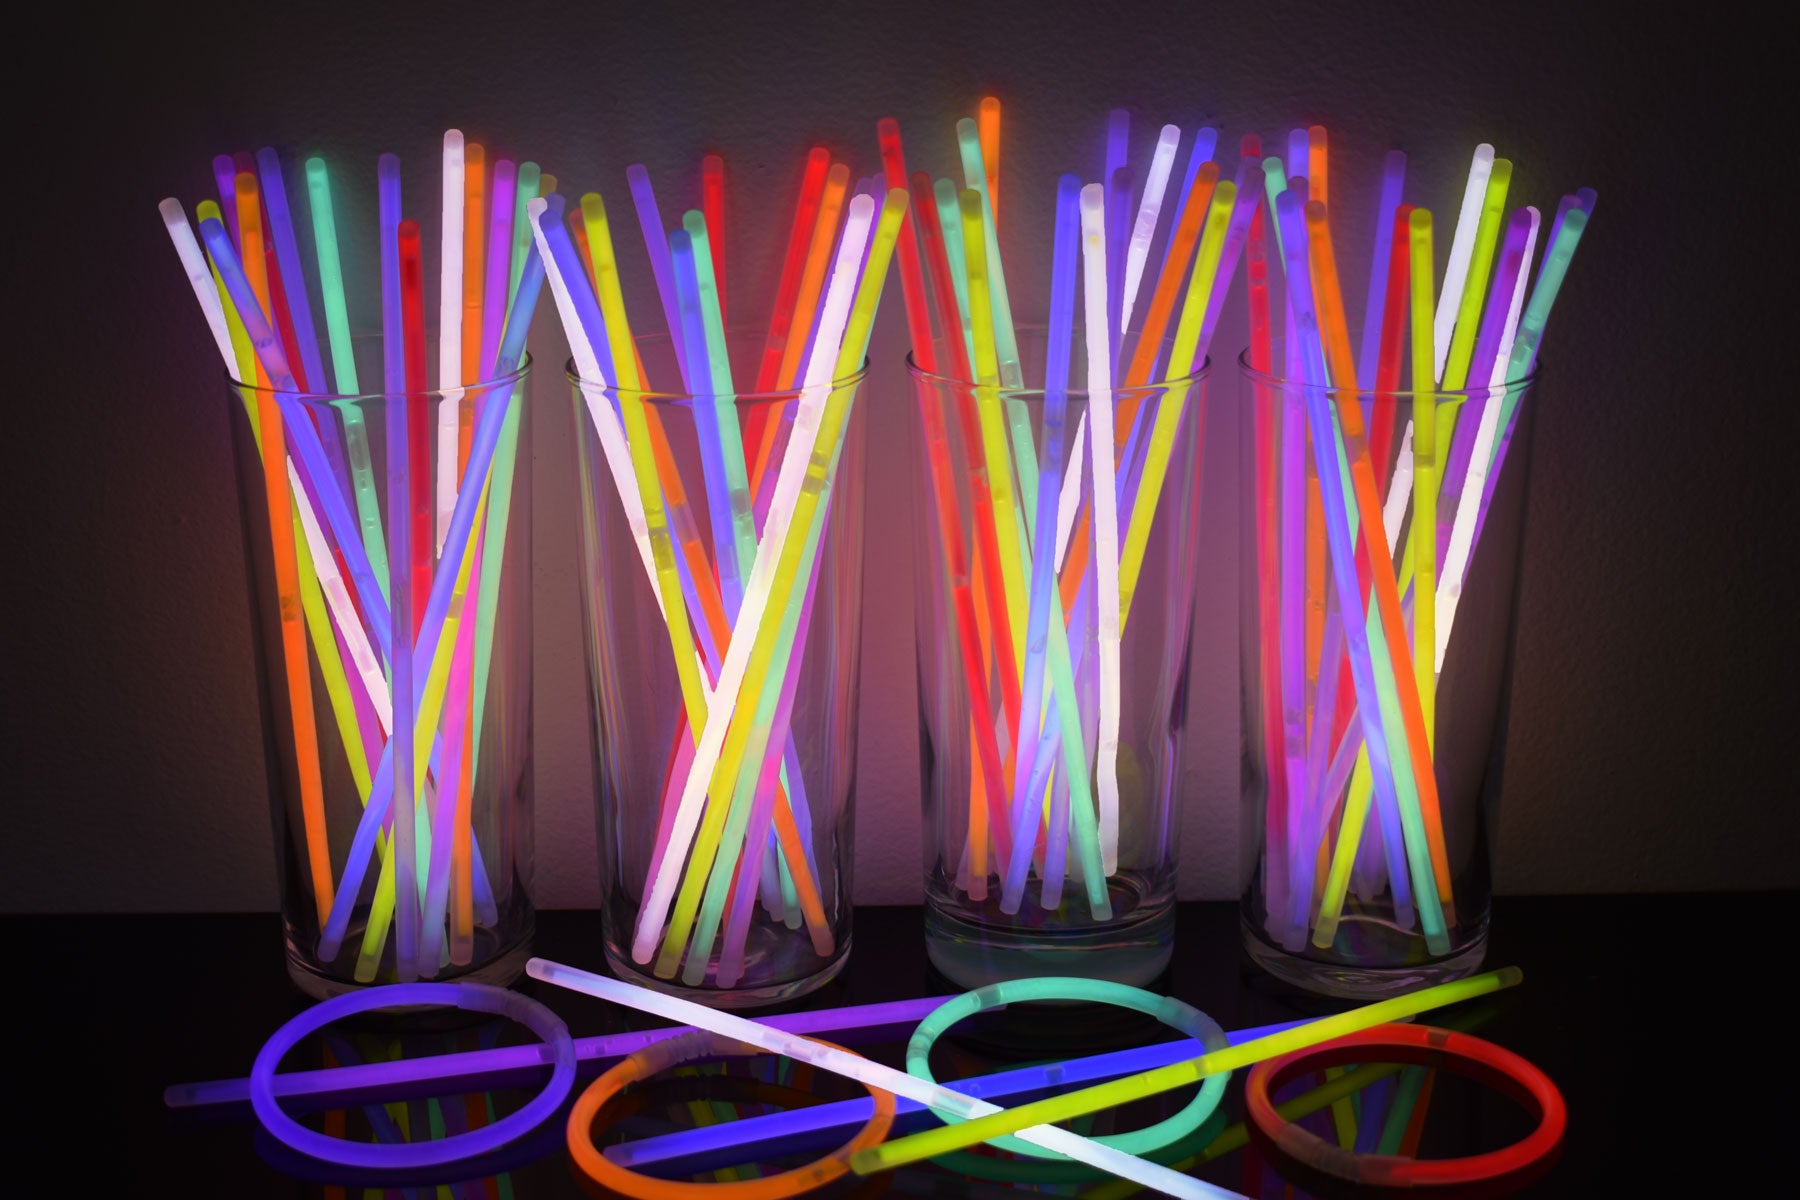 8 Inch. Glow Sticks Bracelets Neon Colors - 1000 Count